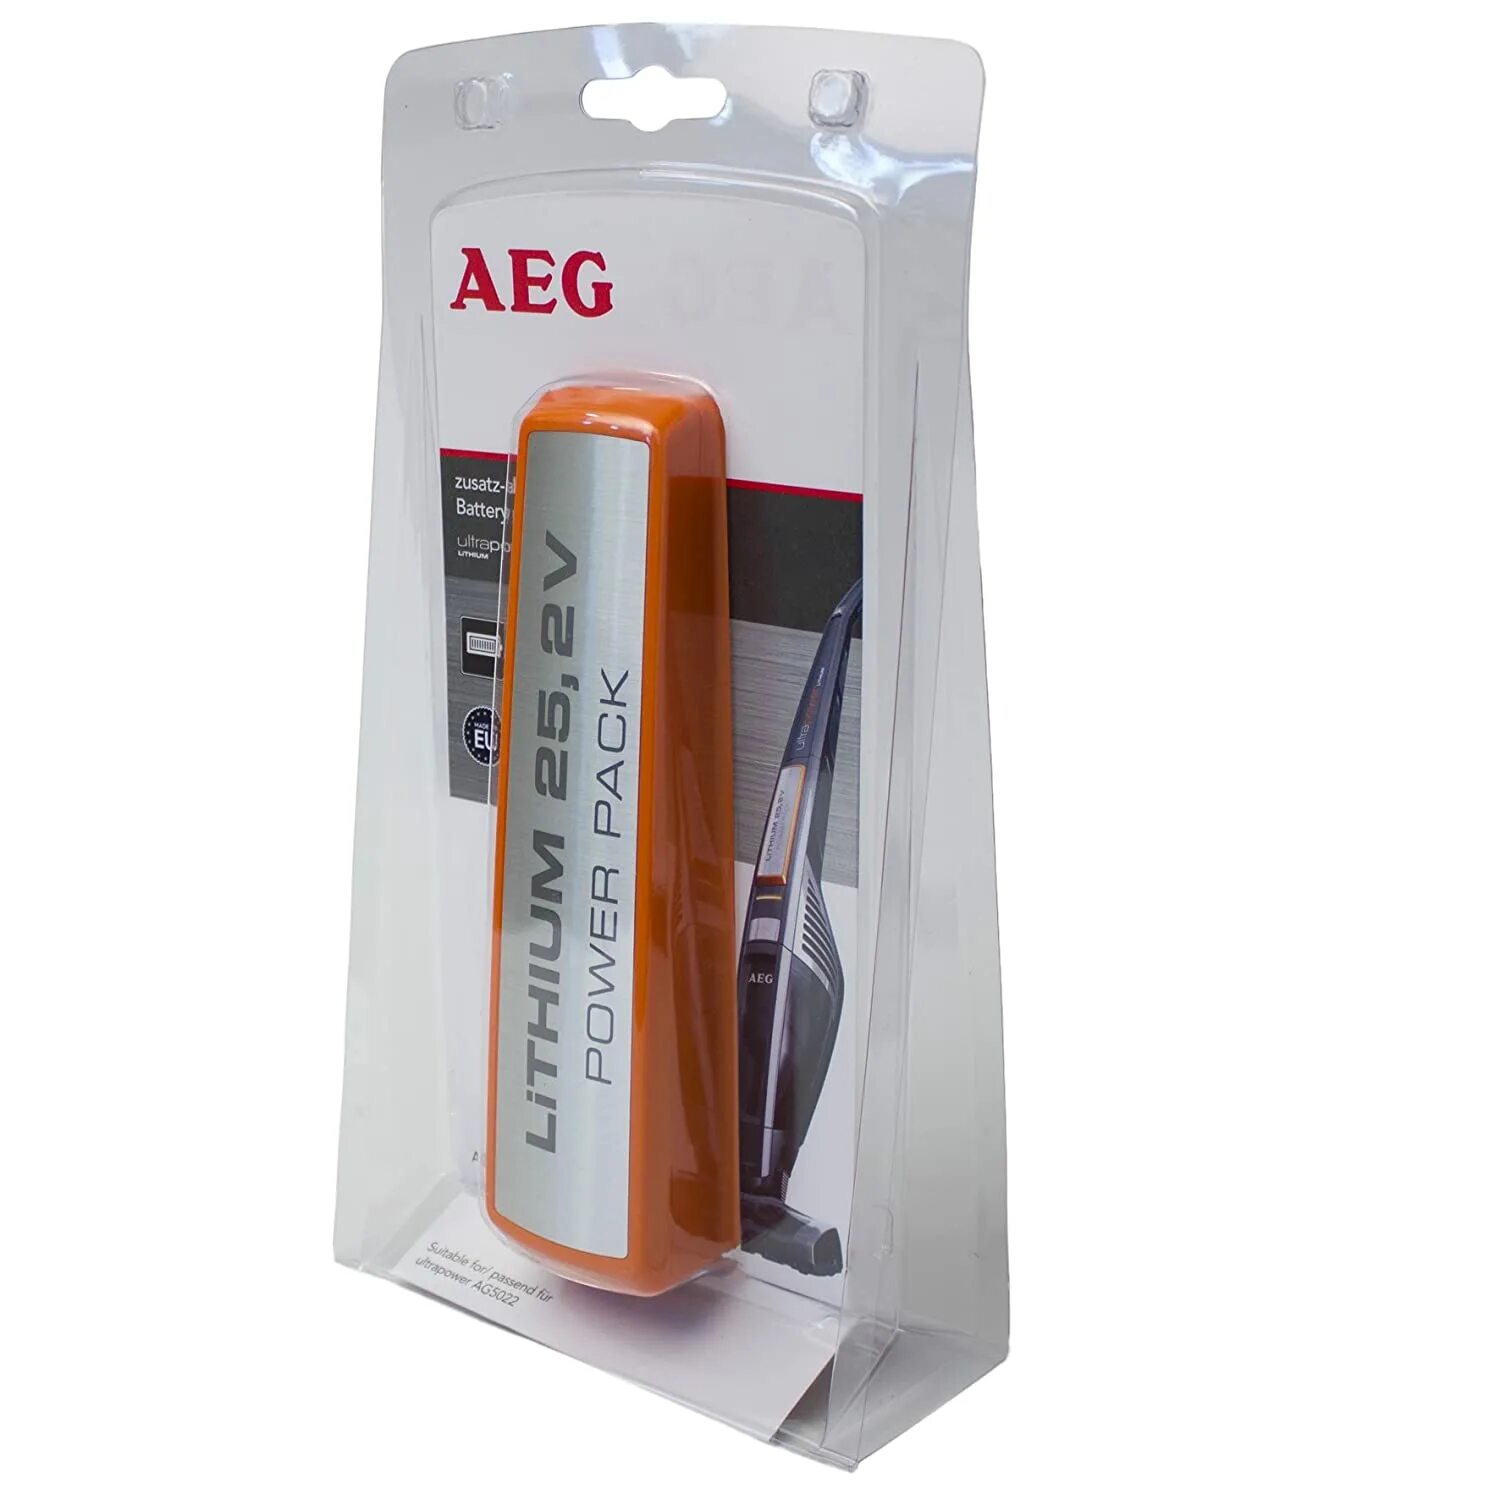 Аккумуляторы (батарейки) для пылесоса AEG 25,2v 140127175614. AEG ULTRAPOWER аккумулятор. AEG, ag942 аккумулятор. Аккумулятор для пылесоса AEG. Аккумулятор 25.2 v для пылесосов